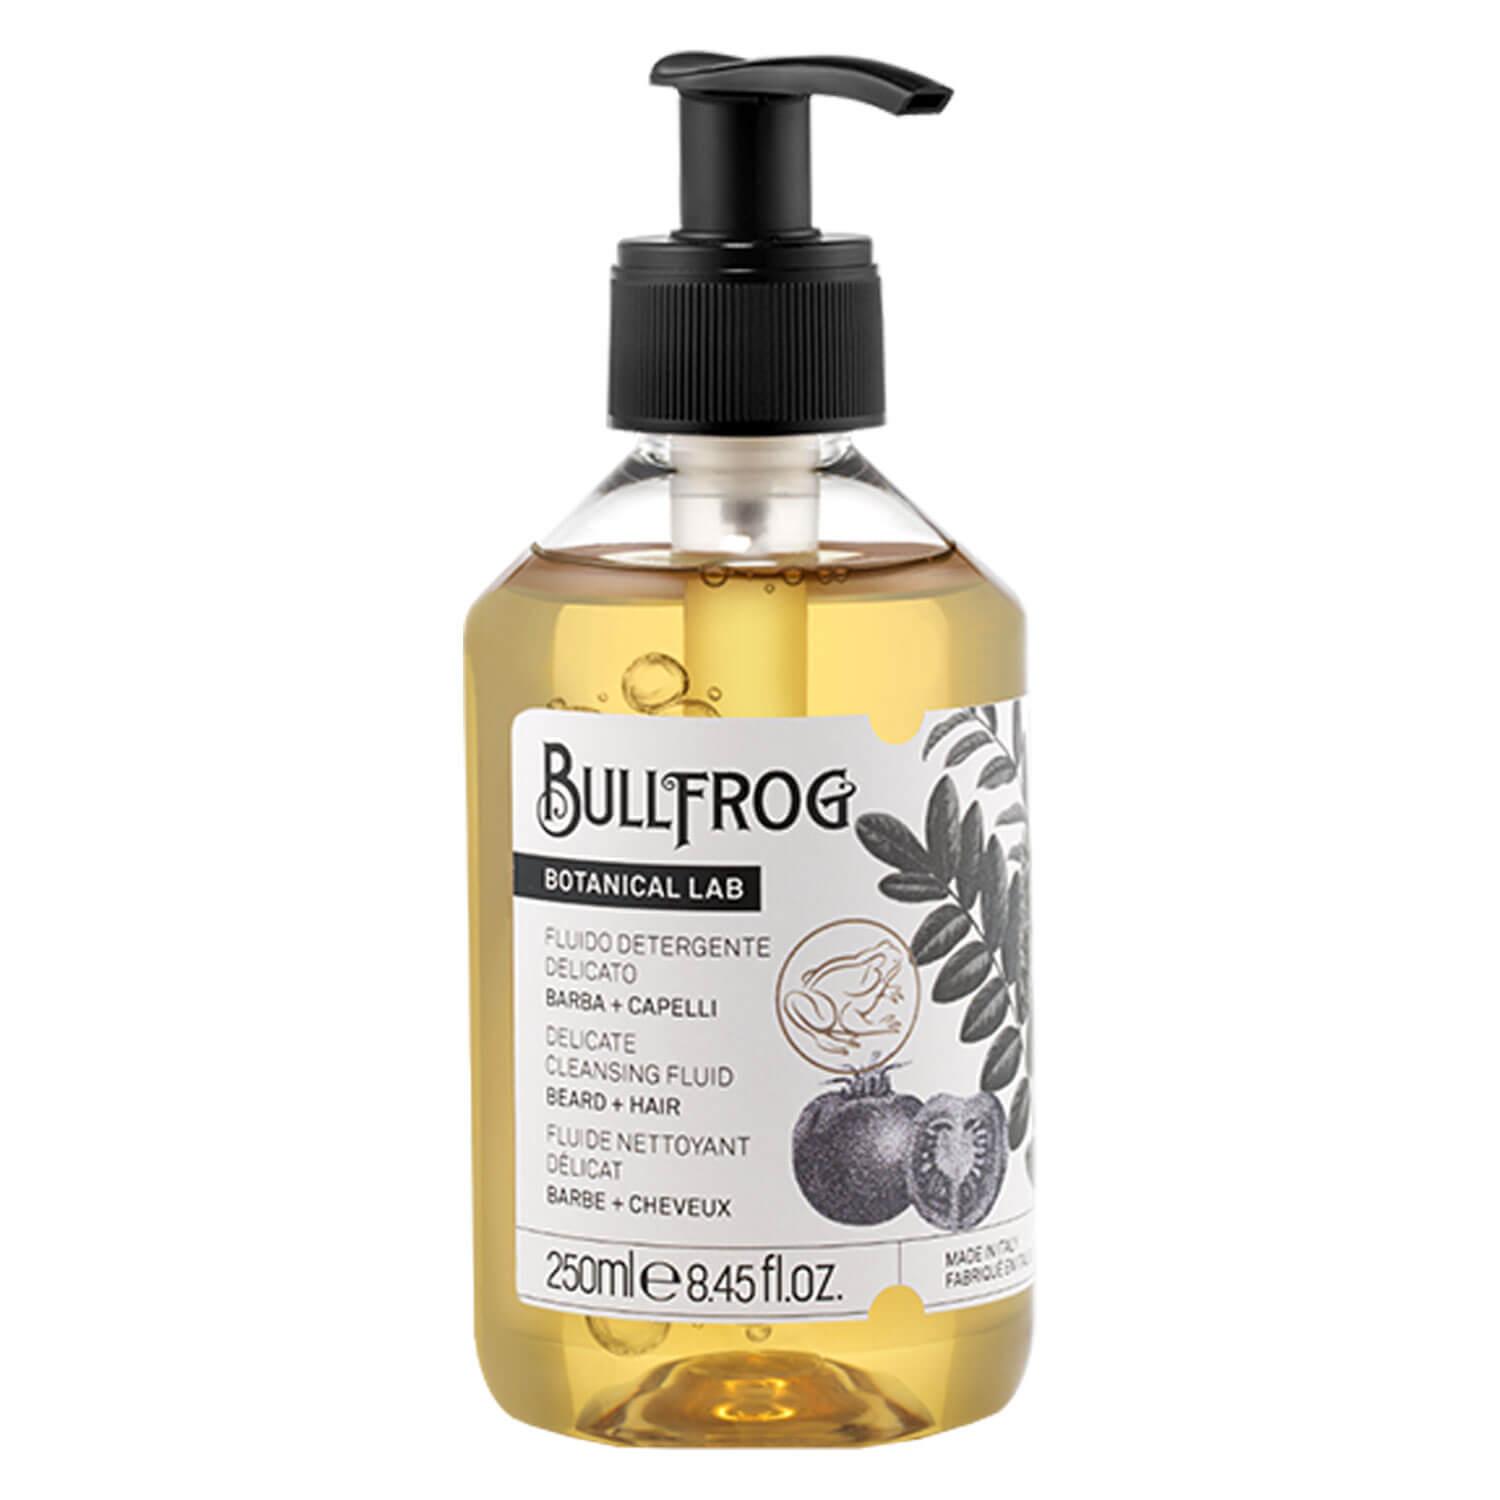 BULLFROG - Delicate Cleansing Fluid